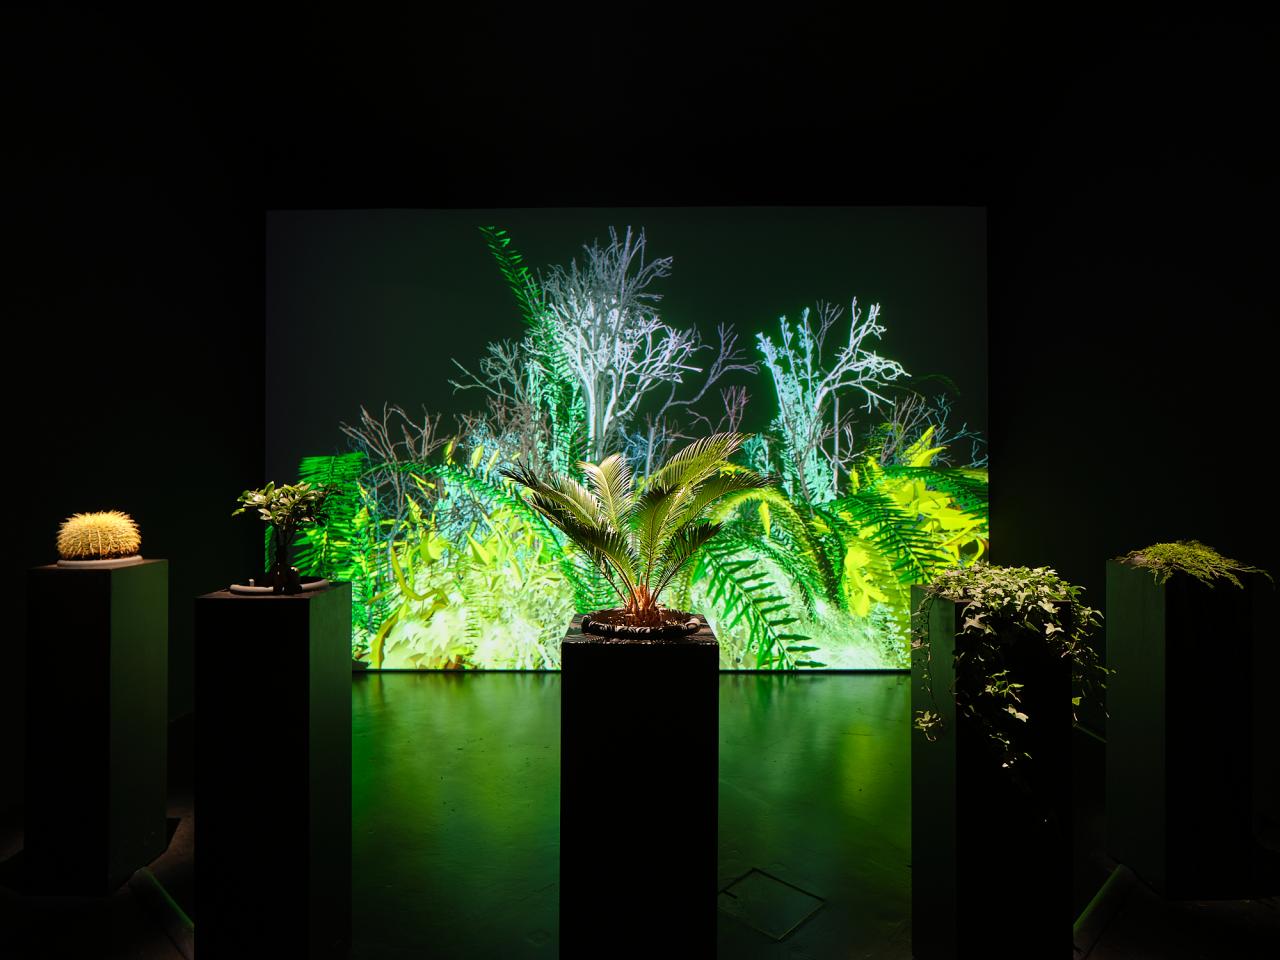 Zu sehen ist das Werk »Interactive Plant Growing«. Eine totale Ansicht zeigt eine Variation aus Pflanzen, die in Töpfen von der decke hängen und in einem Halbkreis vor einer Leinwand angeordnet sind. Die Farben halten sich in unterschiedlichen Grüntönen.